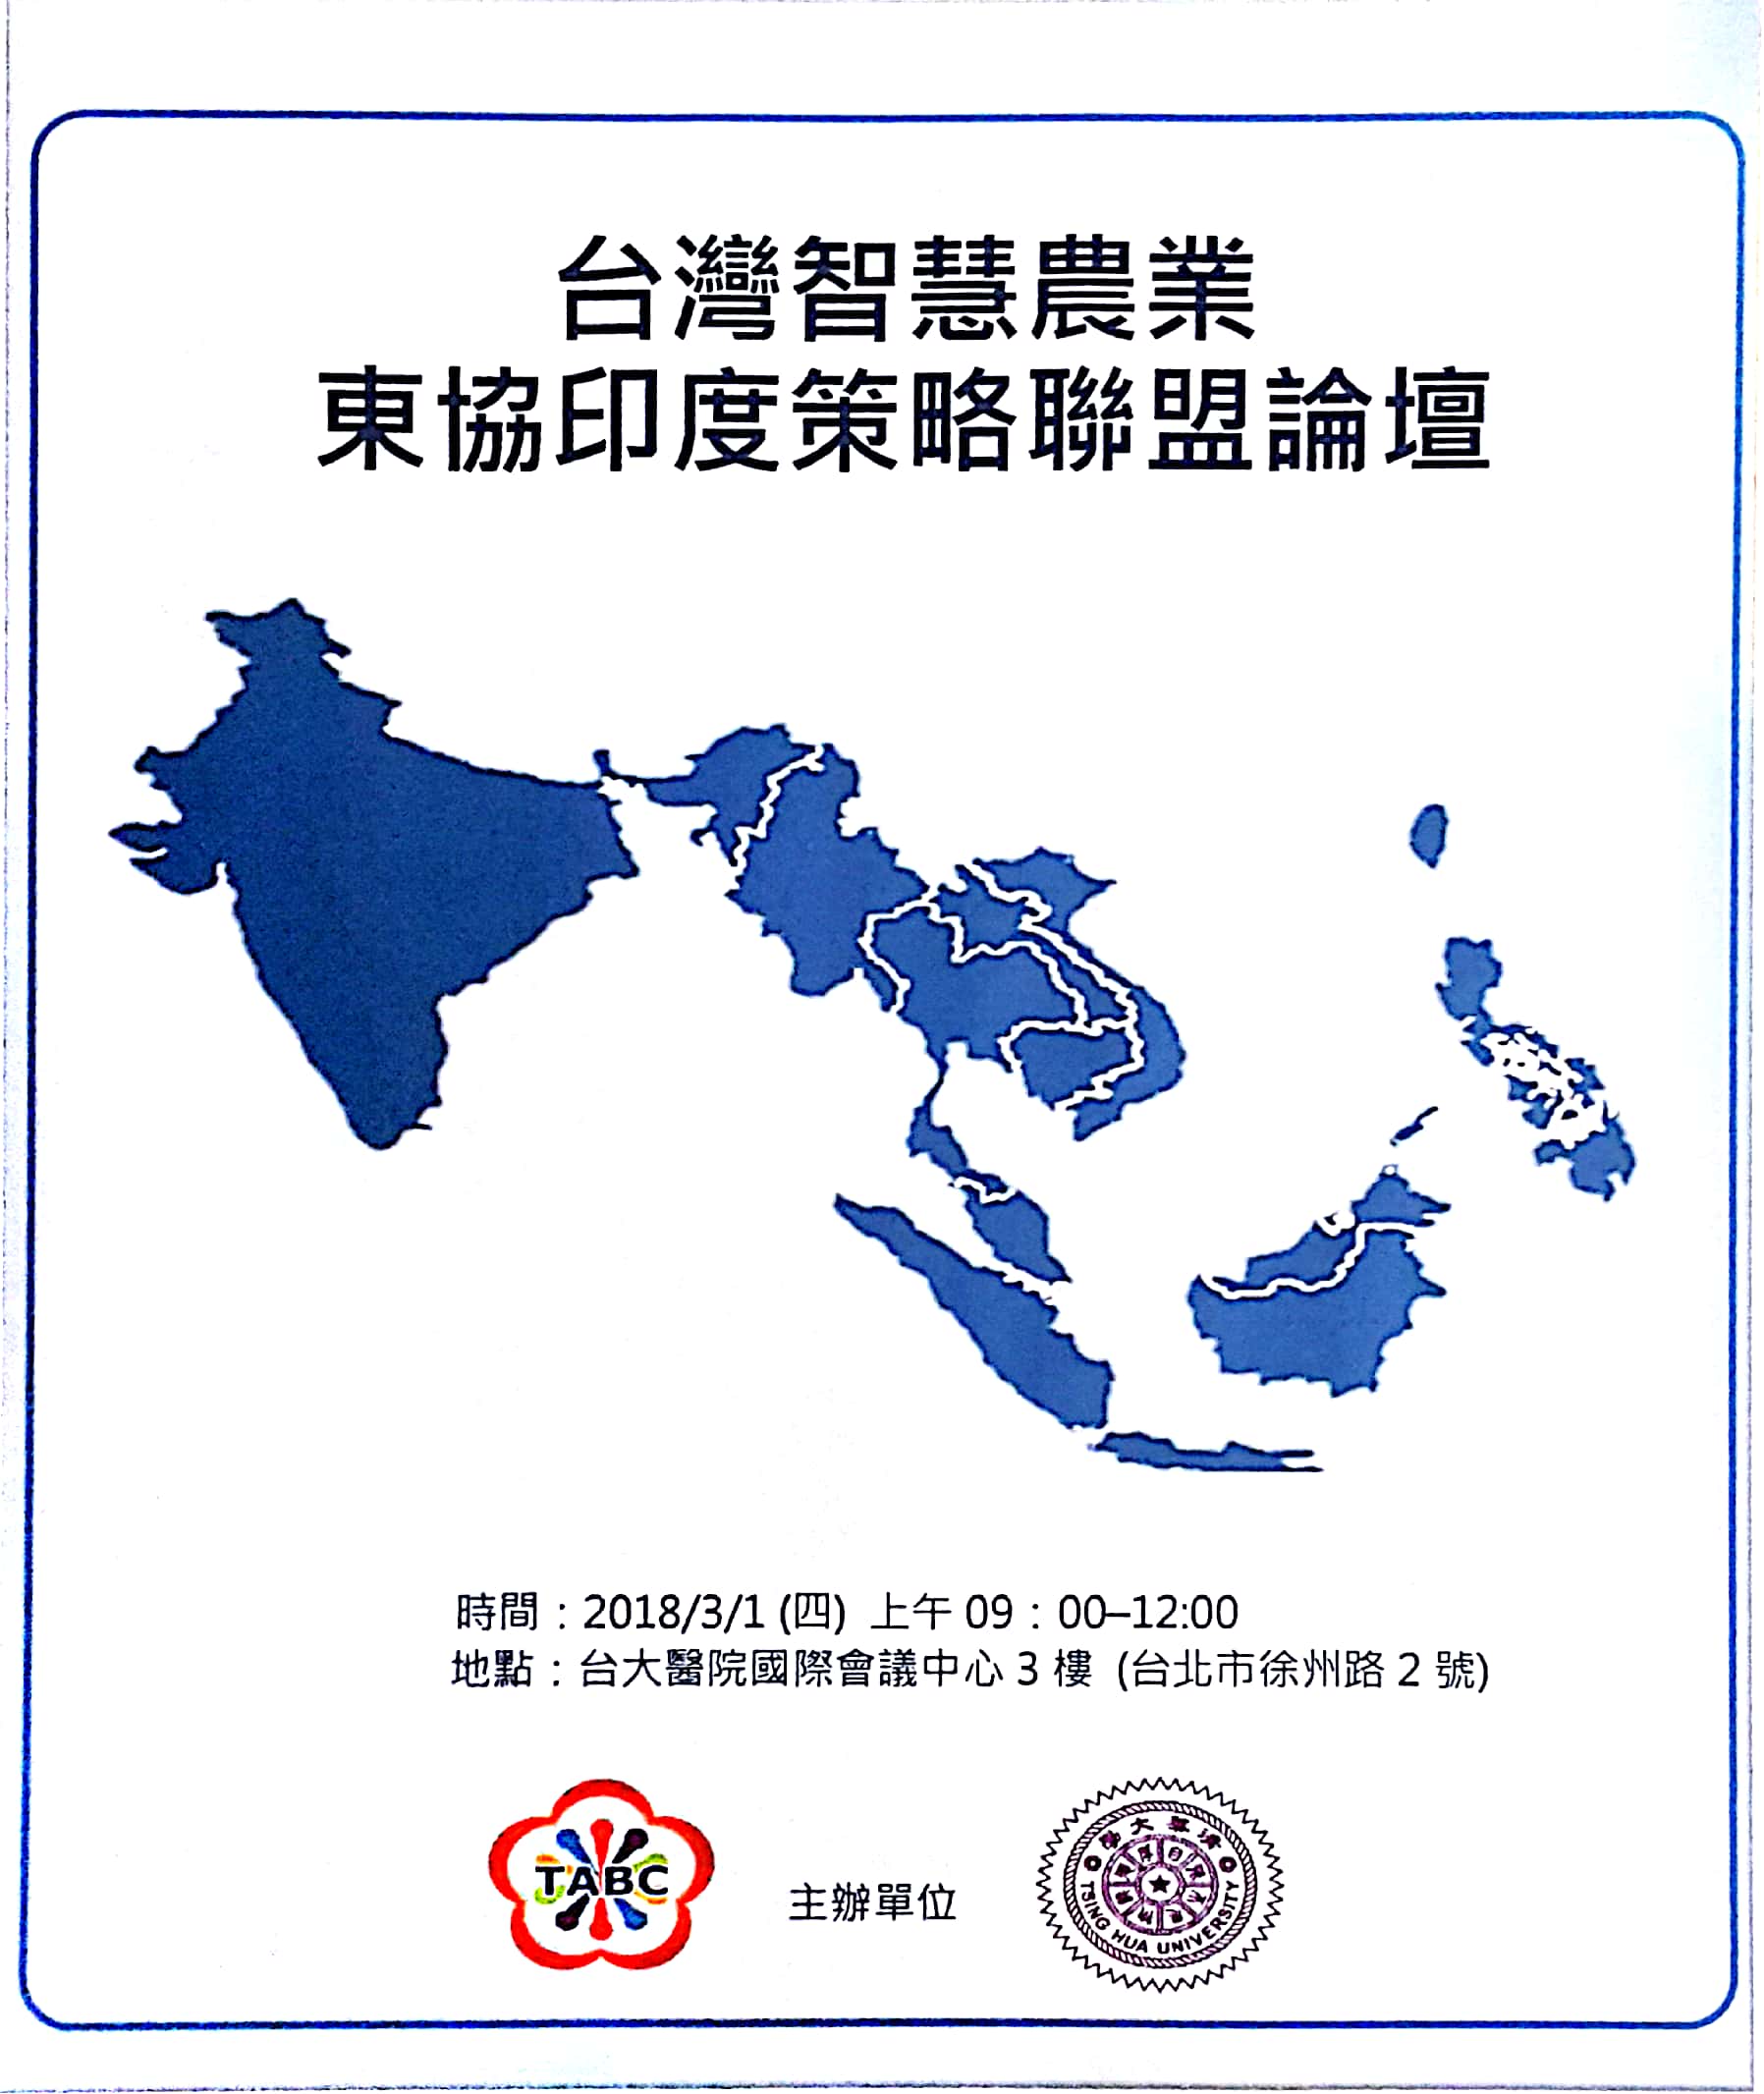 【活動資訊】3月1日 舉辦「台灣智慧農業東協印度策略聯盟論壇」